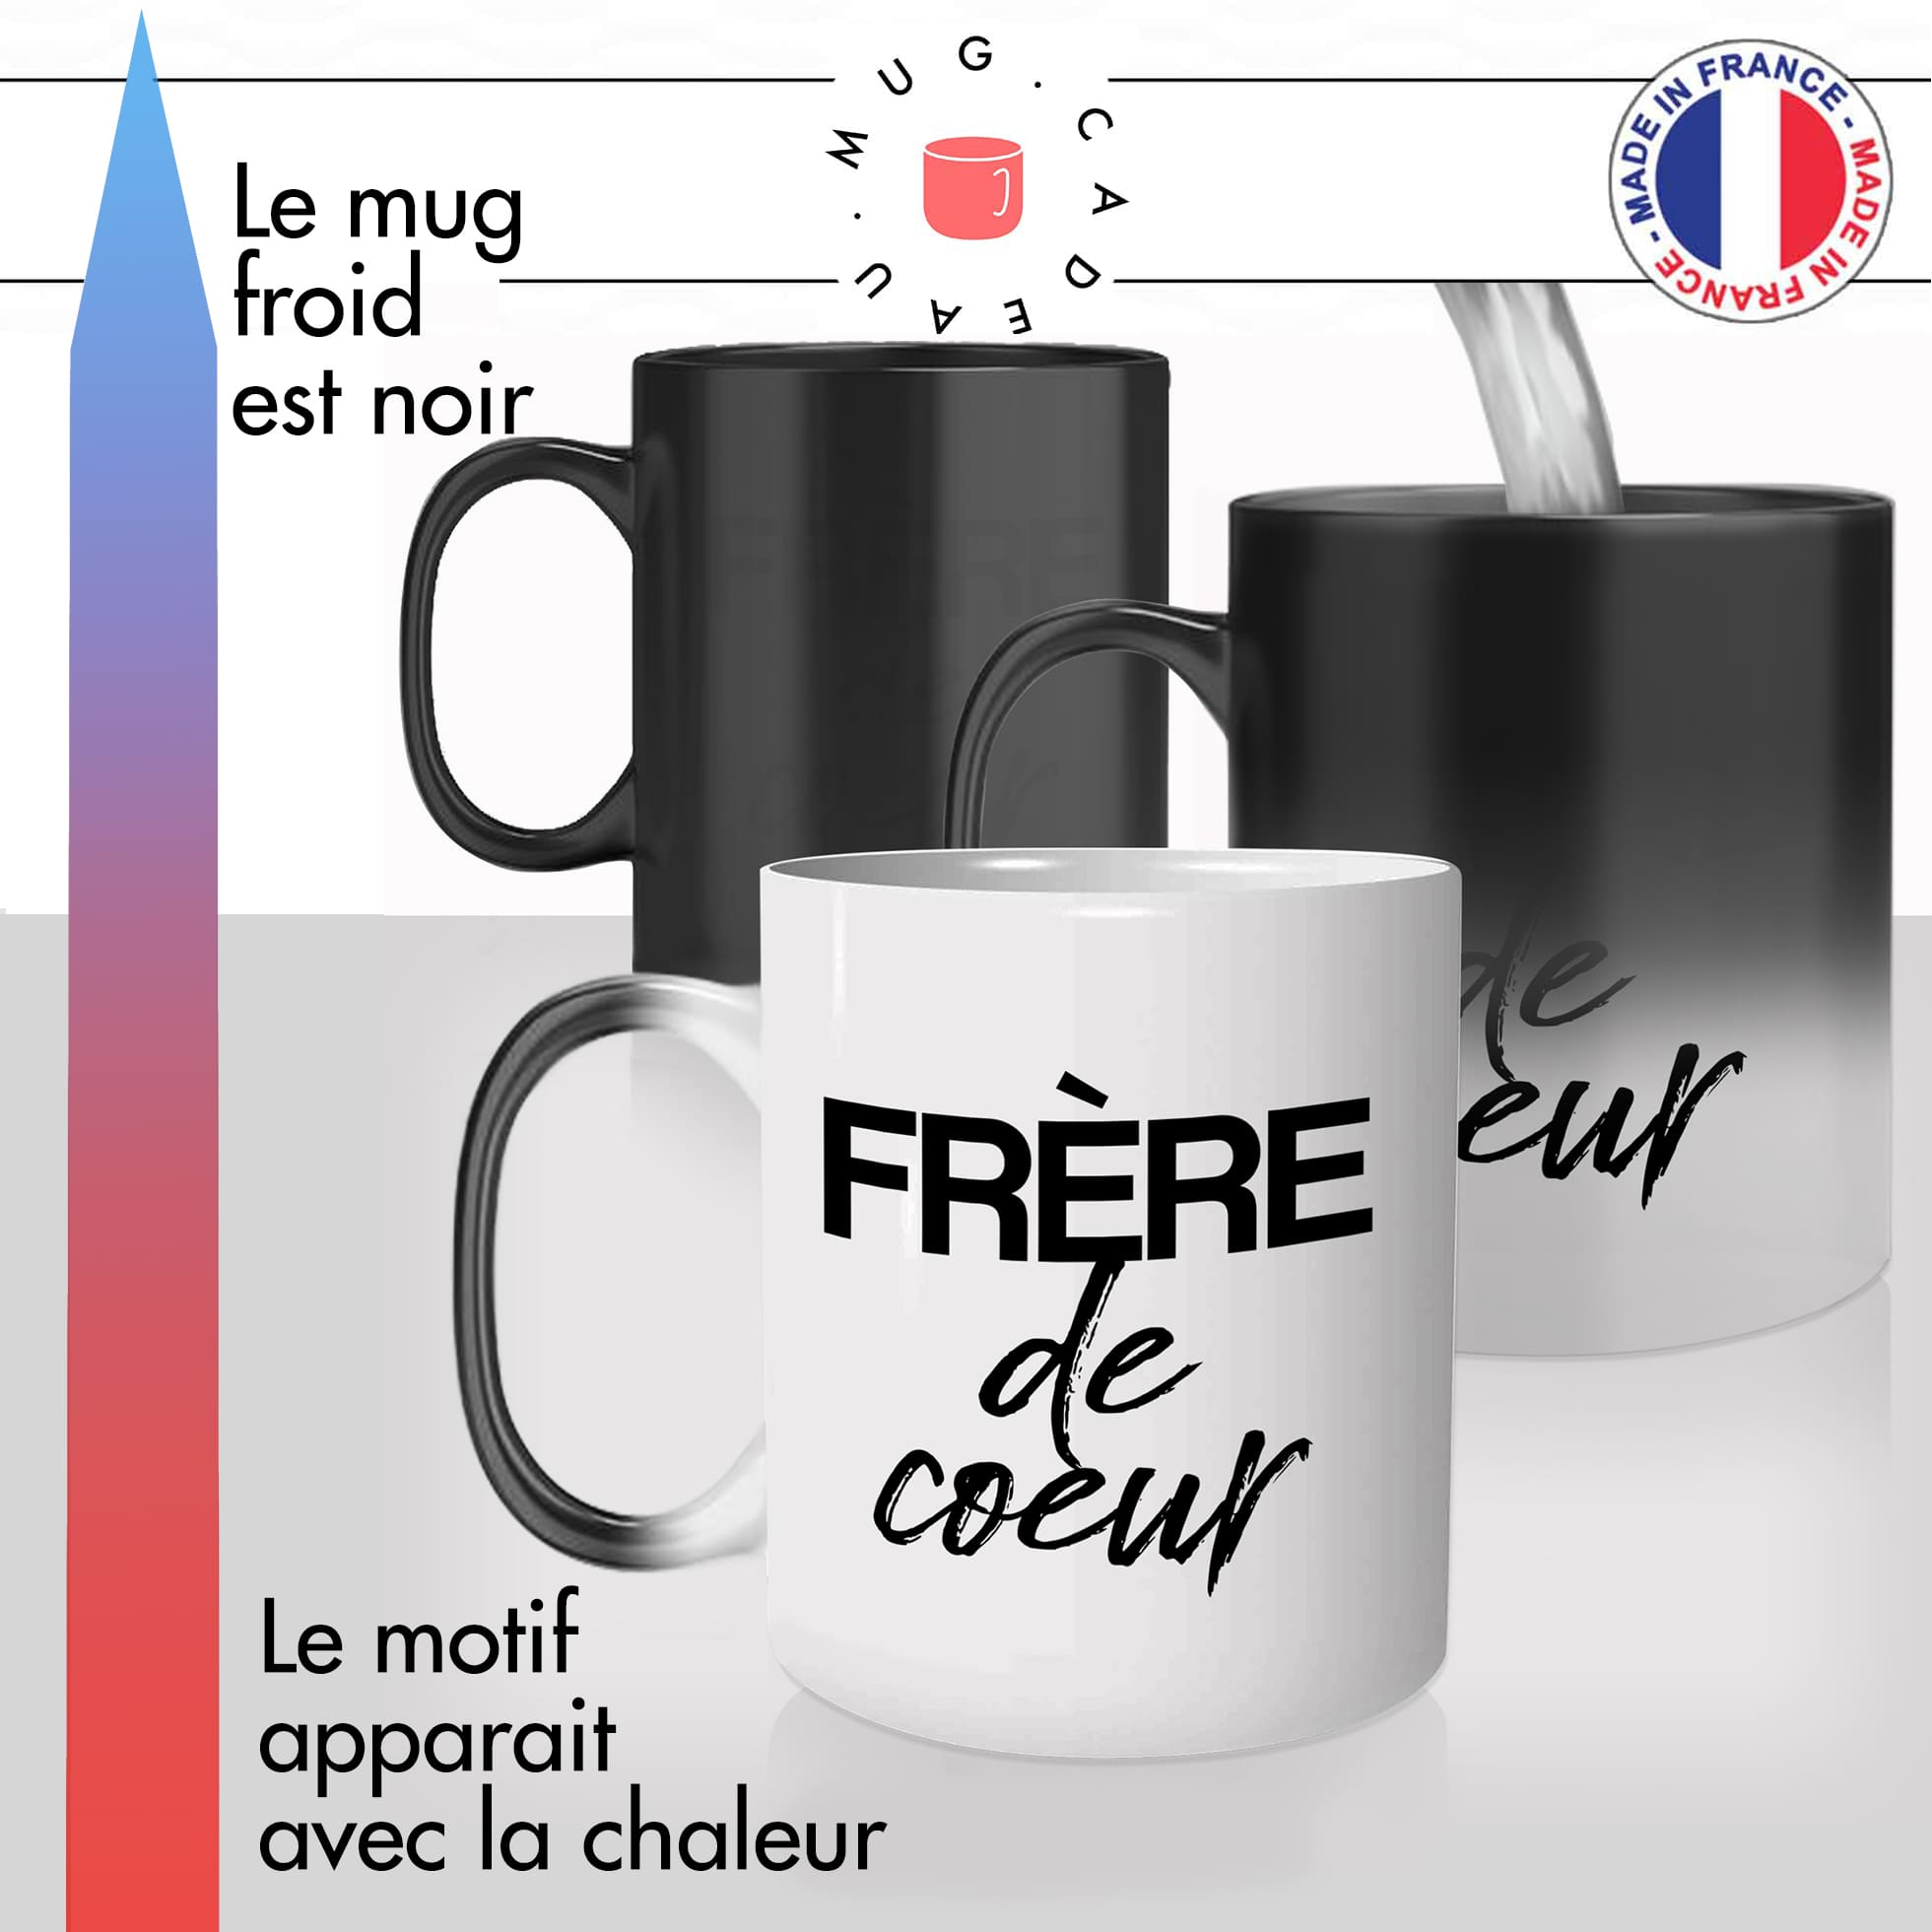 mug-tasse-magique-thermique-cadeau-homme-frere-de-coeur-frate-frade-freres-ami-meilleur-copain-amitié-humour-café-thé-personnalisé-personnalisable